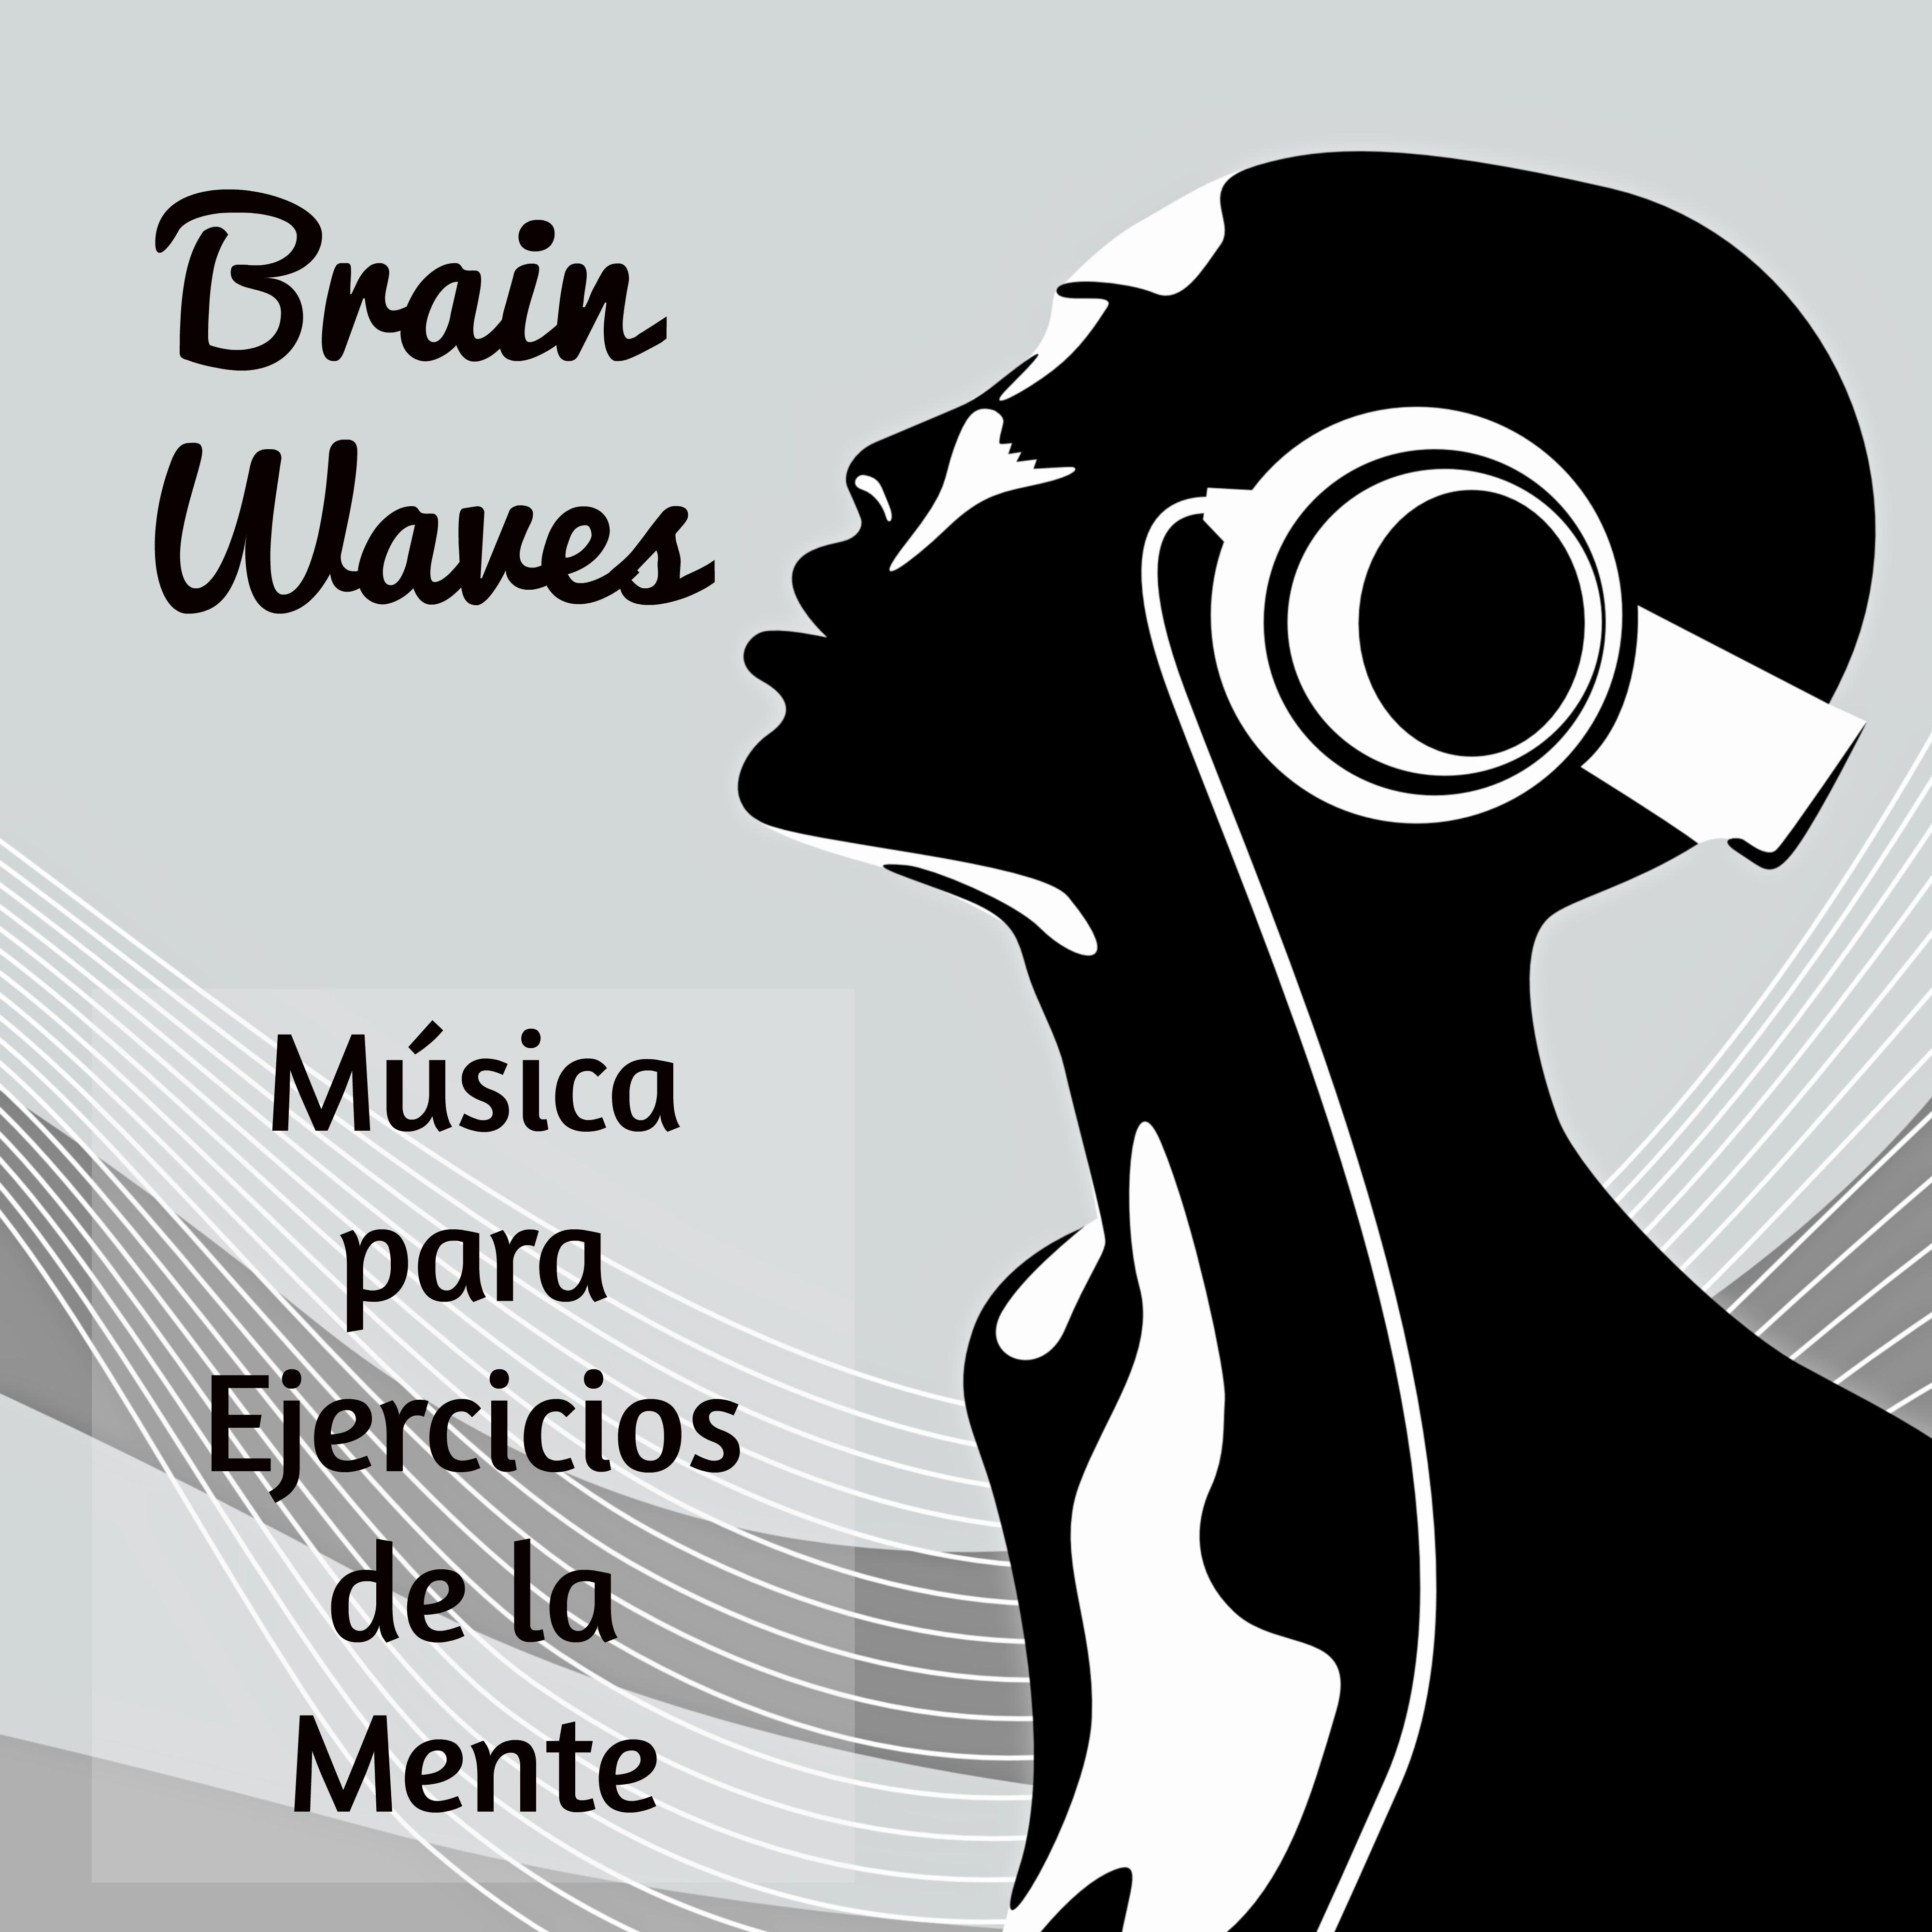 Brain Waves  Mu sica para Ejercicios de la Mente Mejorar la Concentracio n con Sonidos Instrumentales New Age